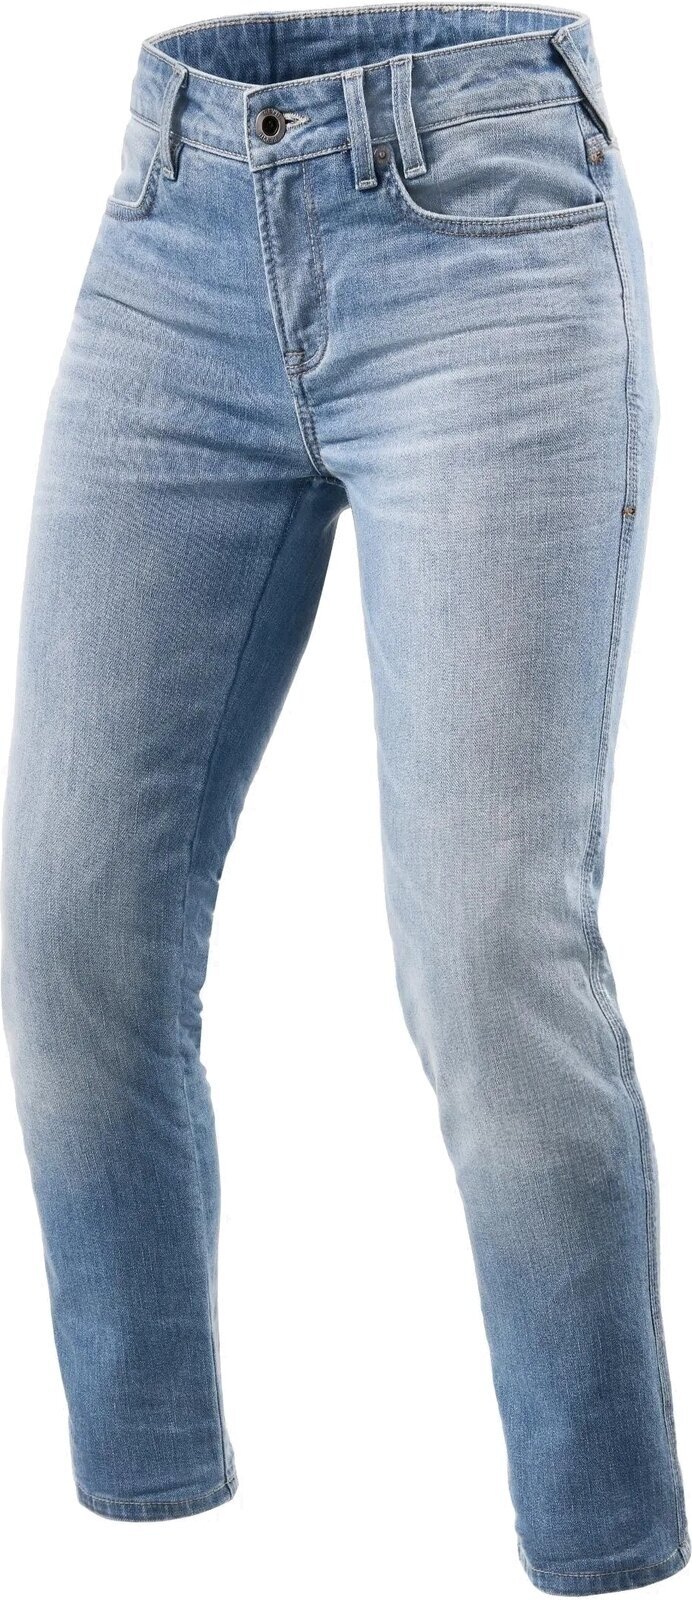 Motoristične jeans hlače Rev'it! Jeans Shelby 2 Ladies SK Light Blue 32/28 Motoristične jeans hlače